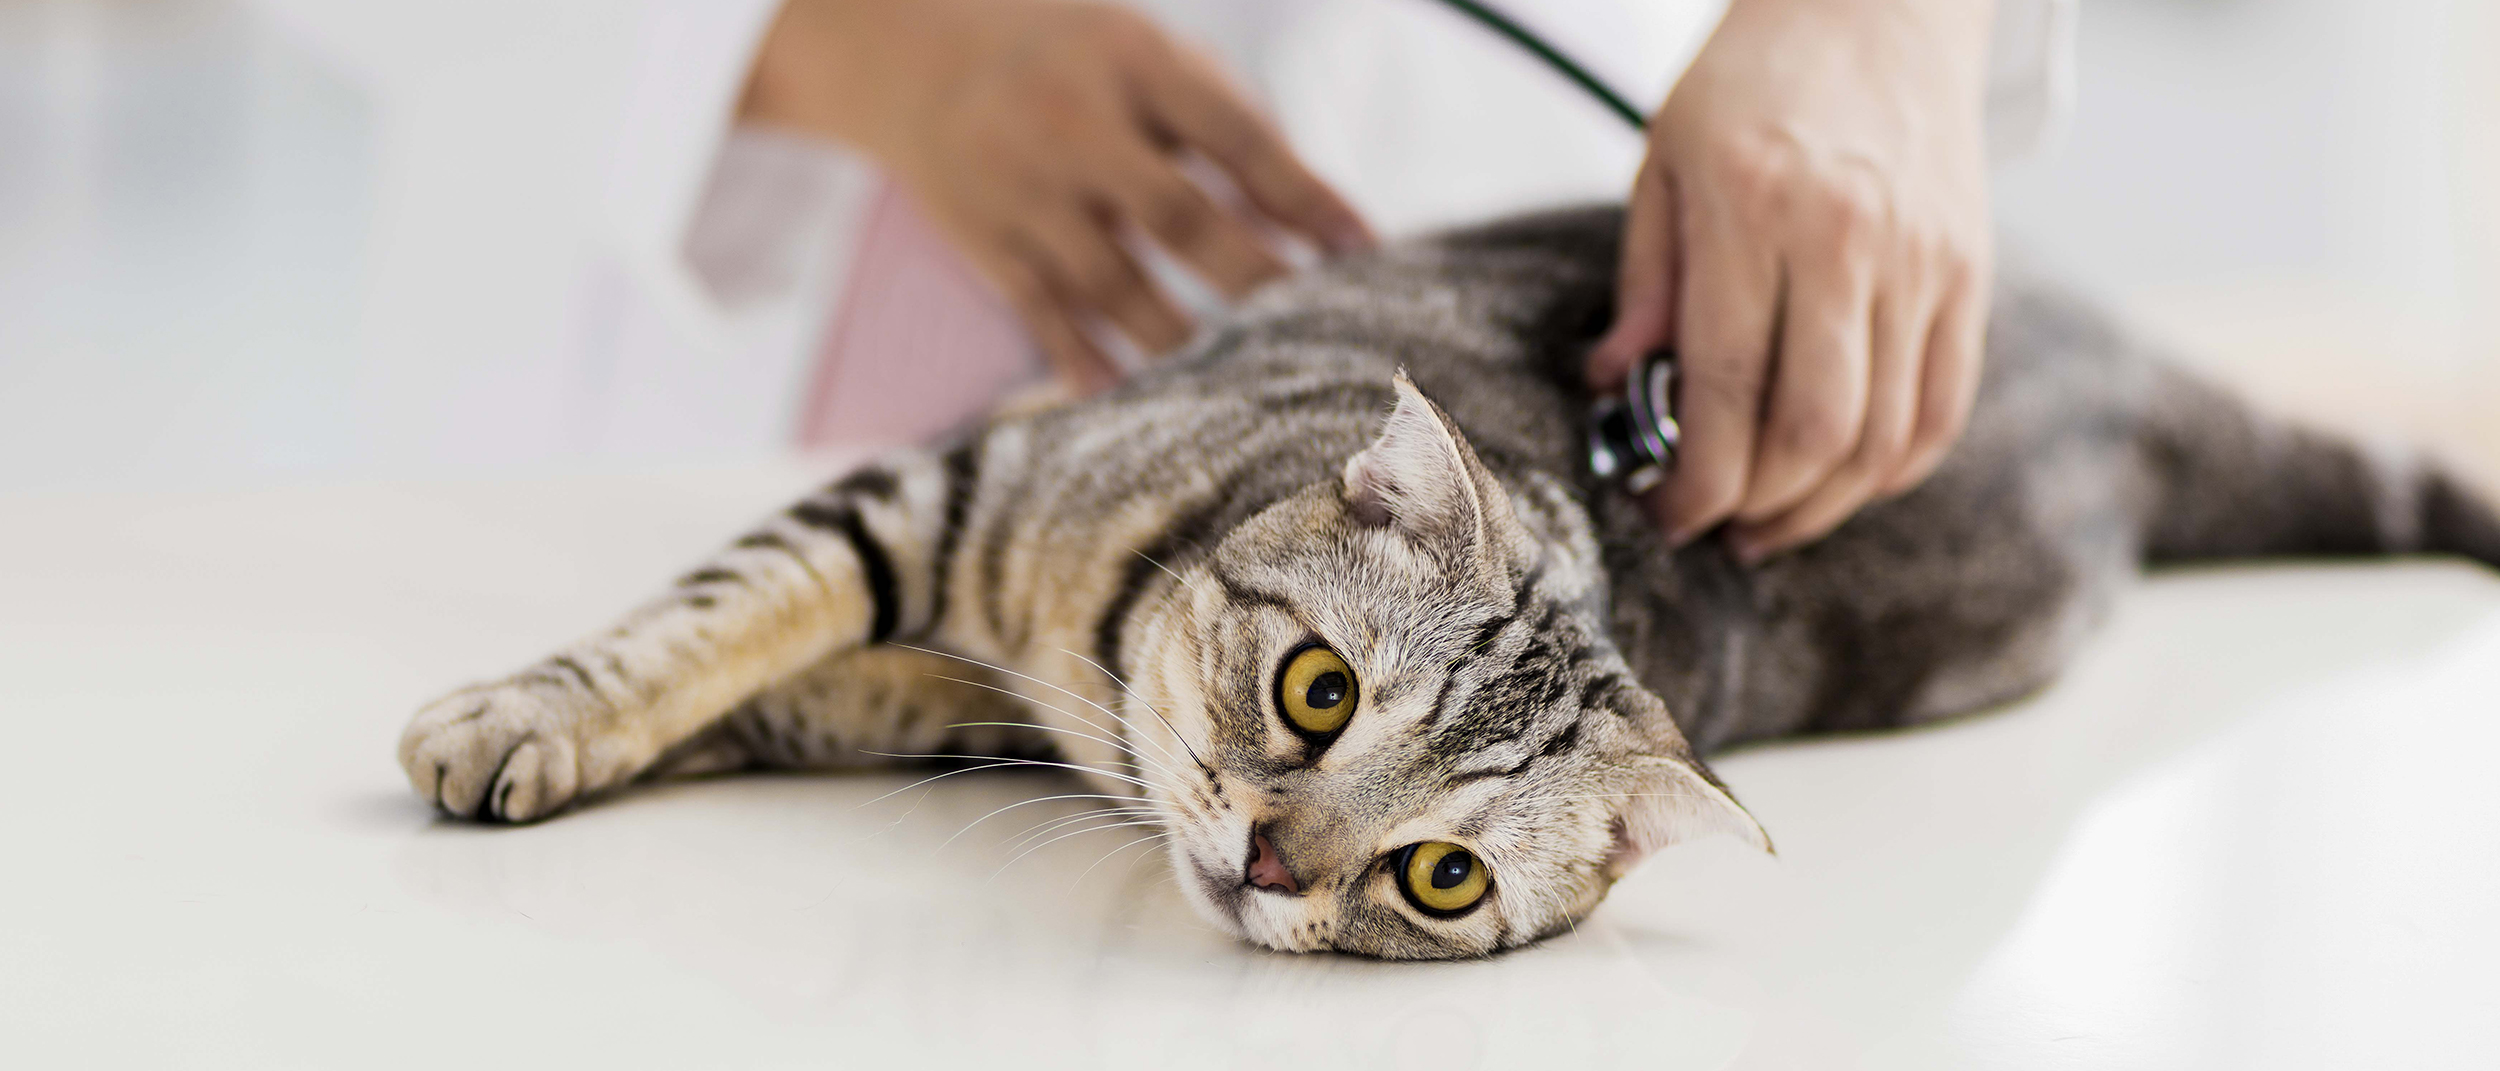 Gato deitado em uma mesa veterinária sendo examinado por um veterinário. ing given a vaccination